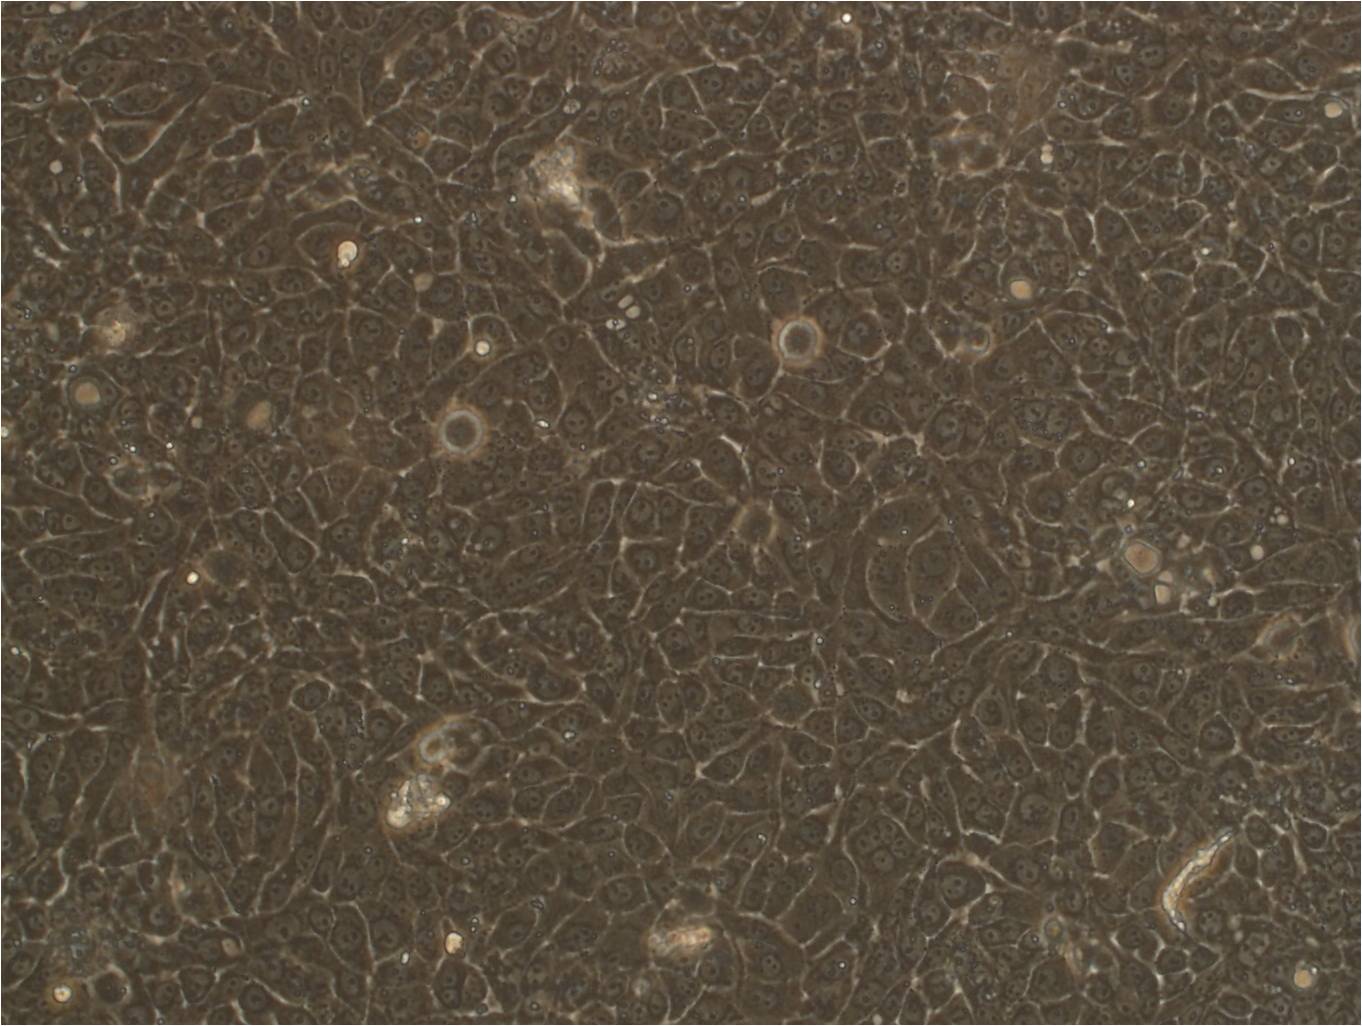 ELD-1 epithelioid cells人朗格汉斯细胞型树突状细胞系,ELD-1 epithelioid cells